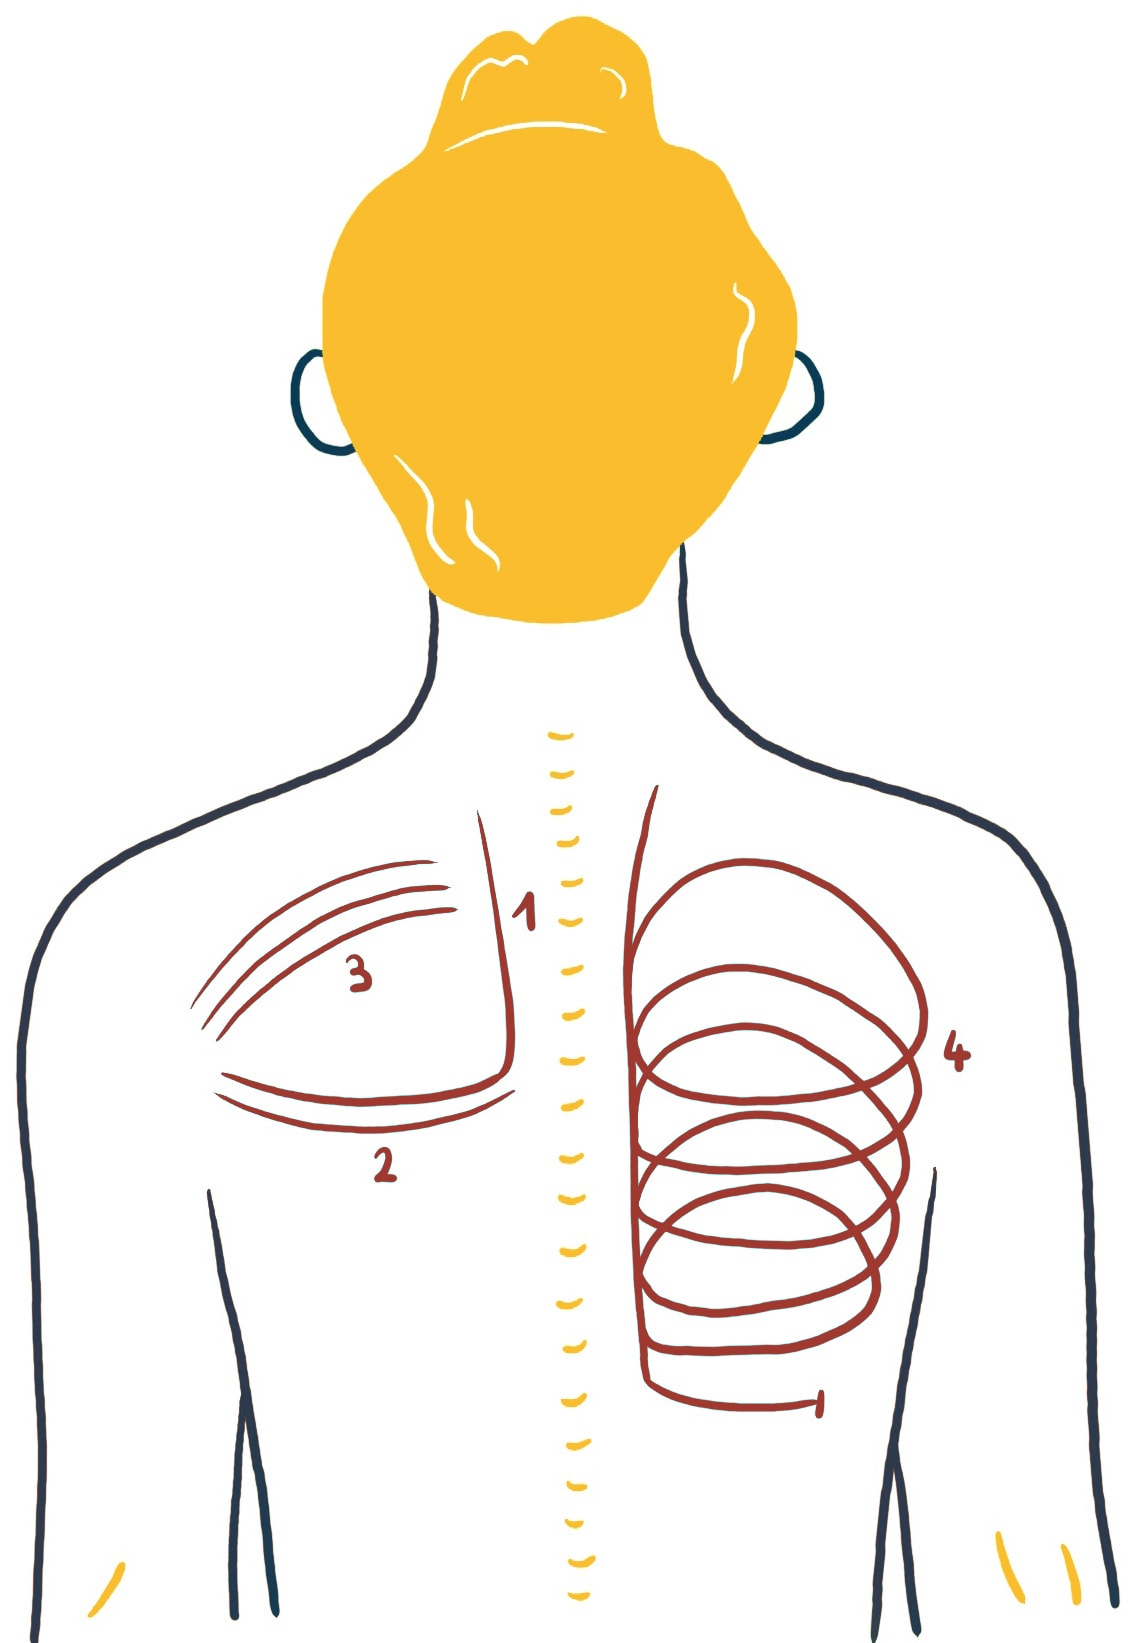 Atemstimulierende Einreibung: Abbildung des Rückens einer Person, wobei die Wirbelsäule in der Mitte durch eine gelbe gestrichelte Linie dargestellt ist. Rote und braune geschwungene Linien markieren vier nummerierte Abschnitte (1-4), die wahrscheinlich Muskeln oder Bereiche hervorheben, die in einem anatomischen Kontext von Interesse sind.